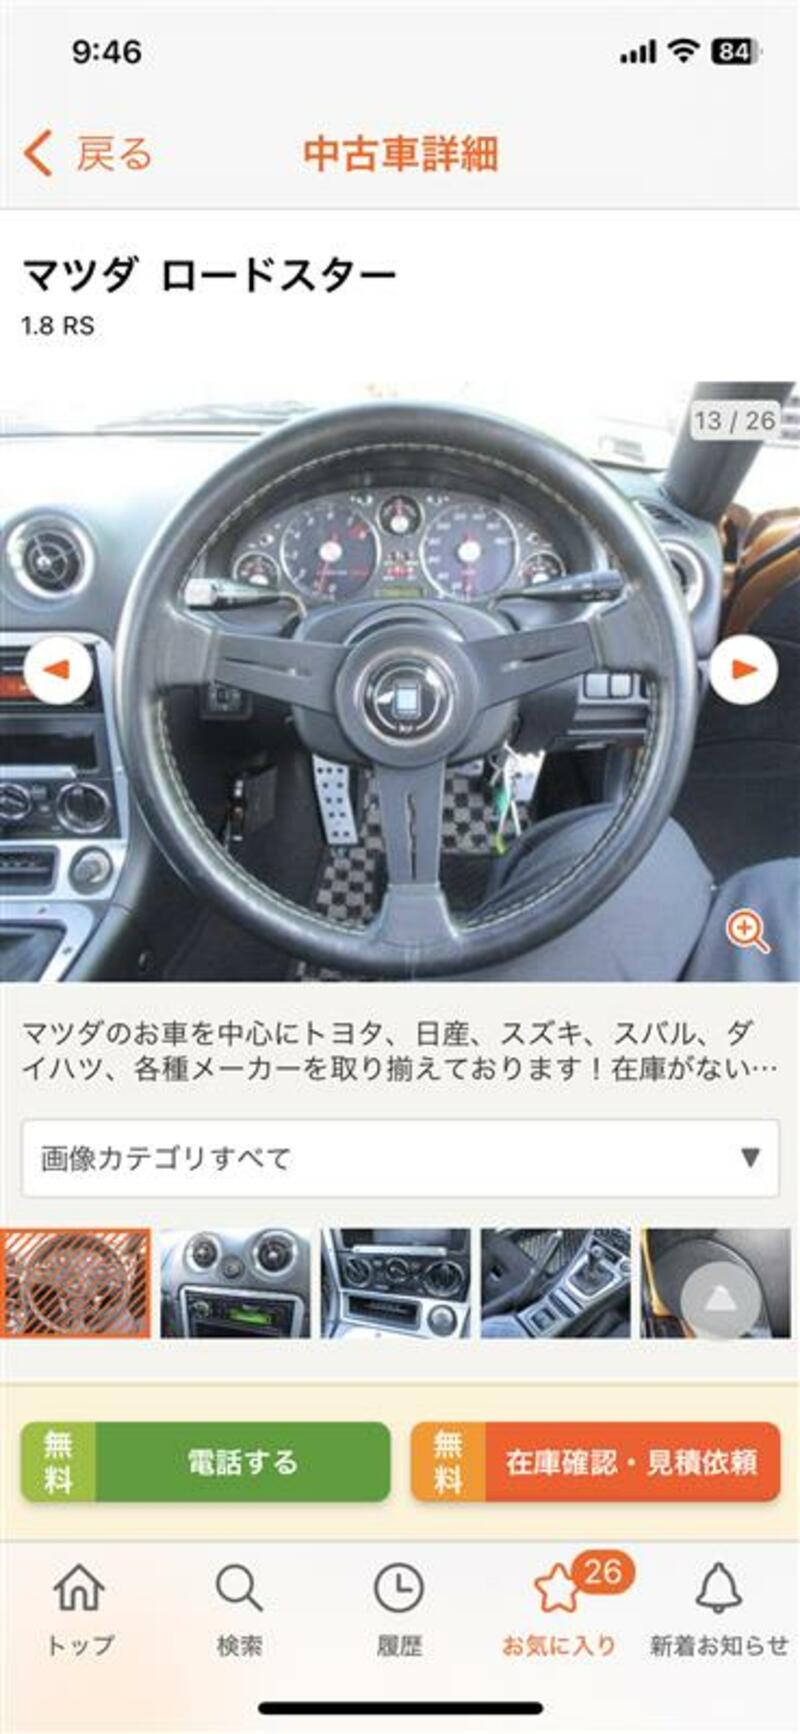 マツダ ロードスター RS(MT_1.8)